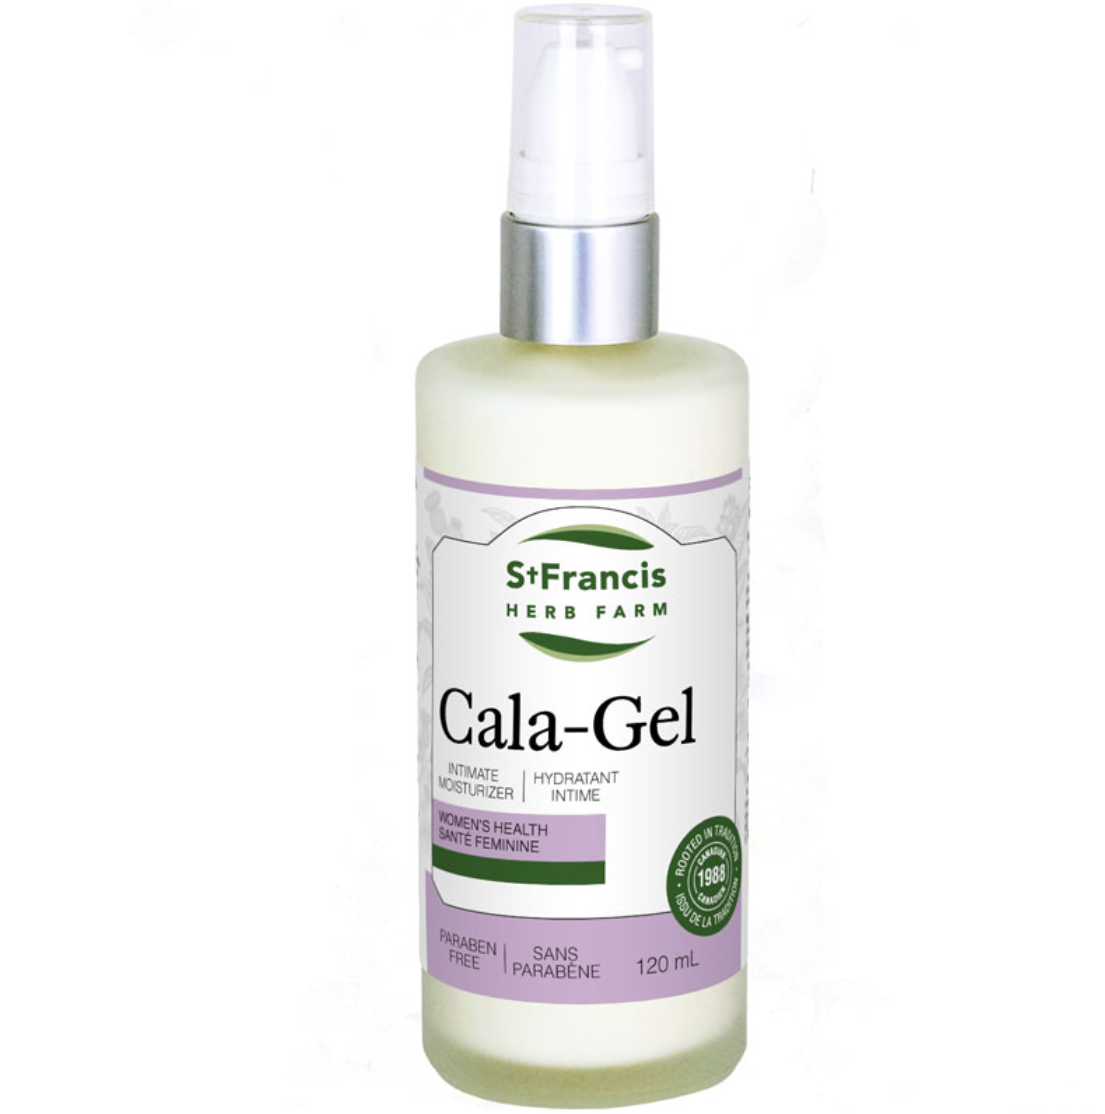 Cala-Gel (vaginal dryness)